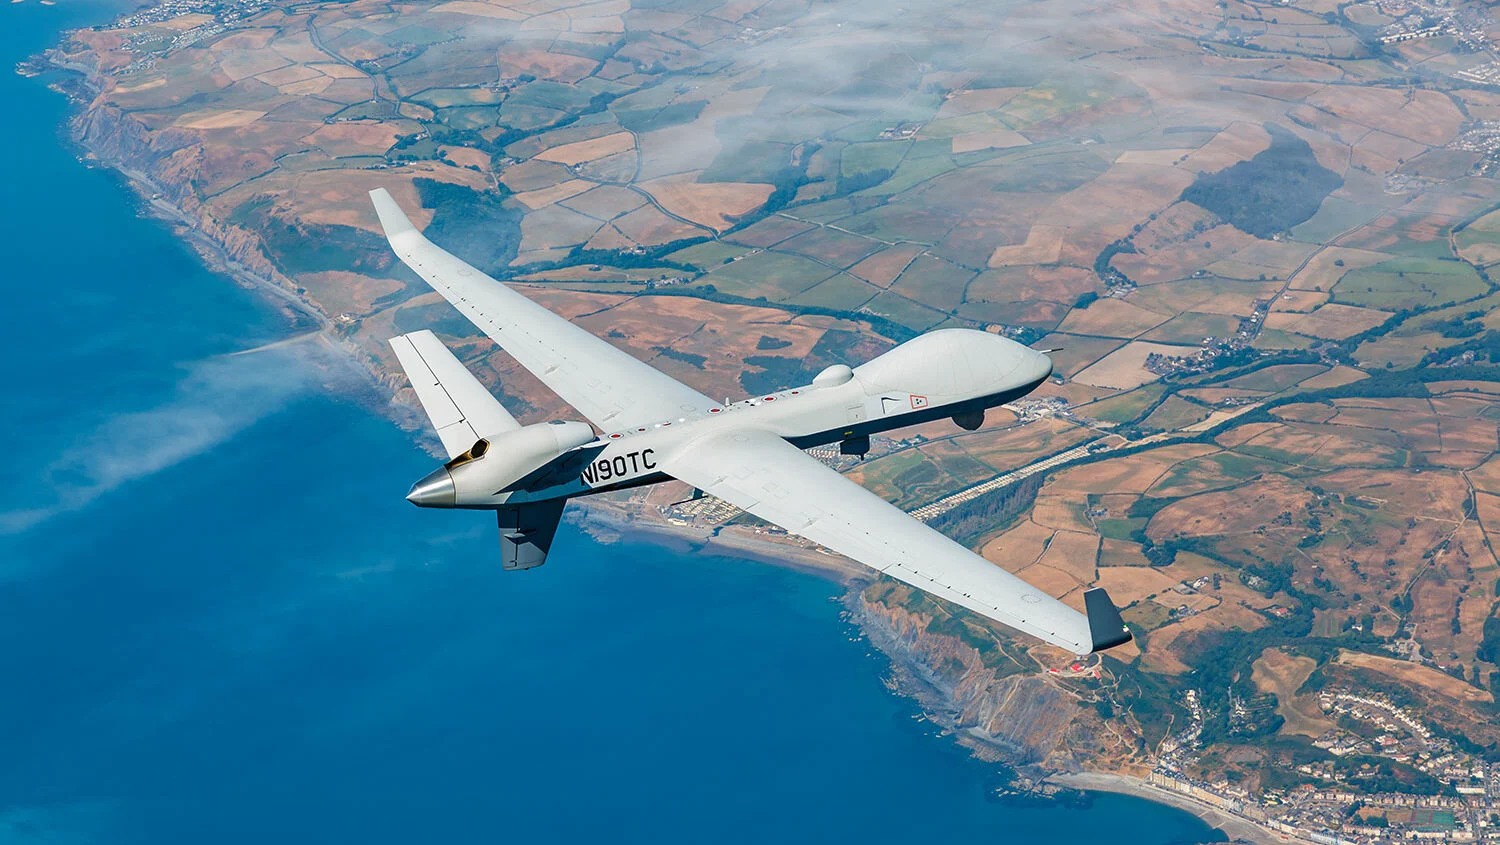 Lepszy nadzór: Polska chce kupić amerykańskie drony MQ-9B SkyGuardian, które zastąpią dzierżawione drony MQ-9A Reaper